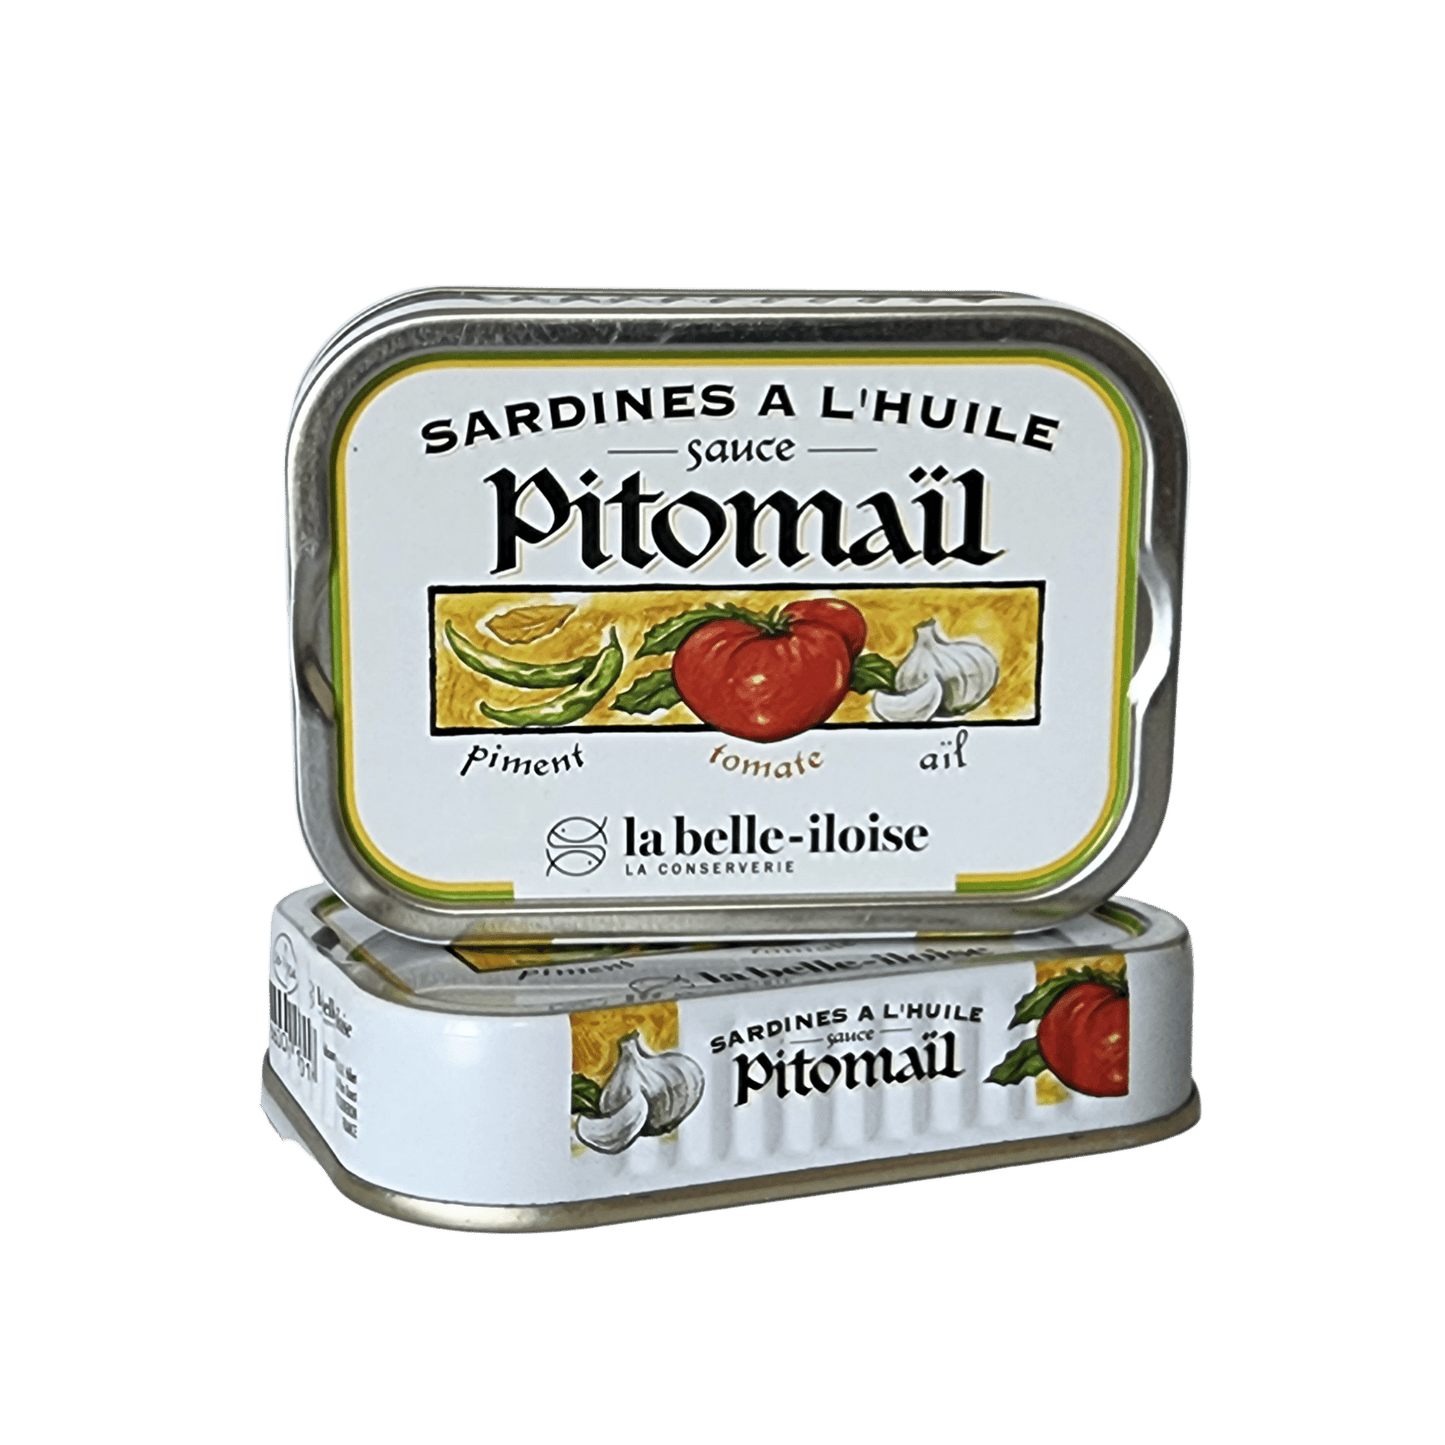 Sardinen | Pitomaïl-Sauce | La Belle-Iloise | Quiberon | Frankreich